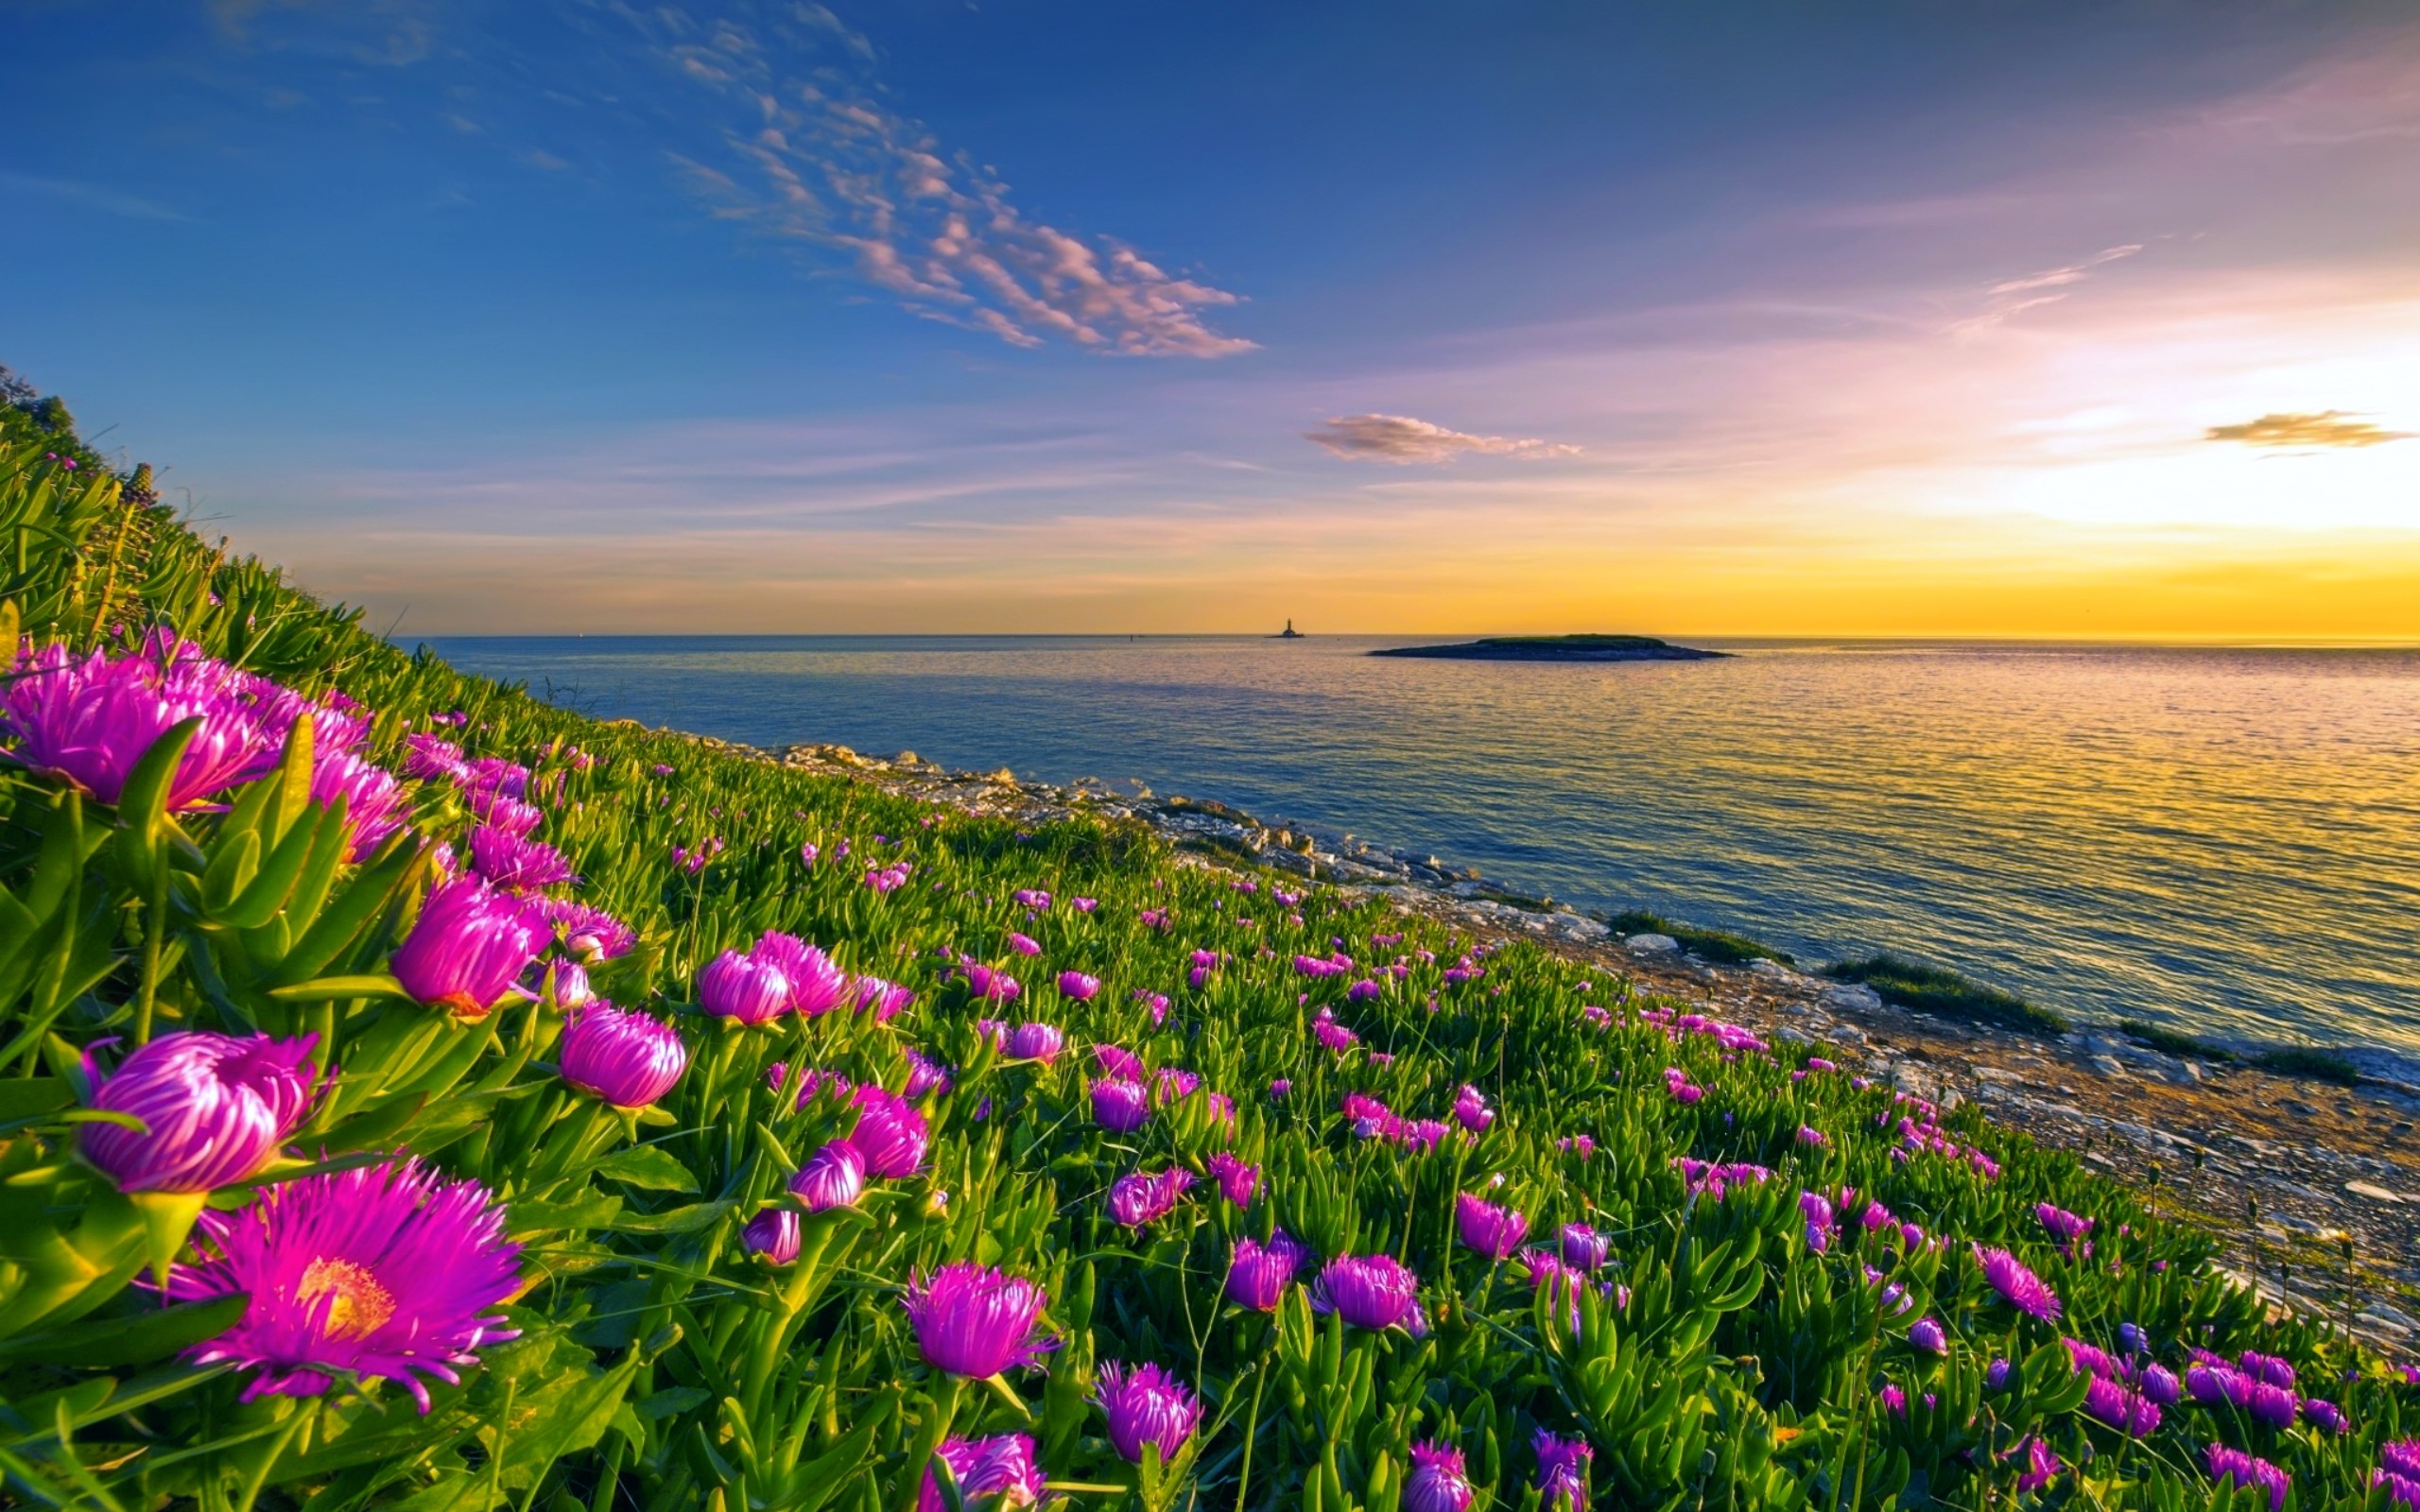 Море солнце и цветы фото